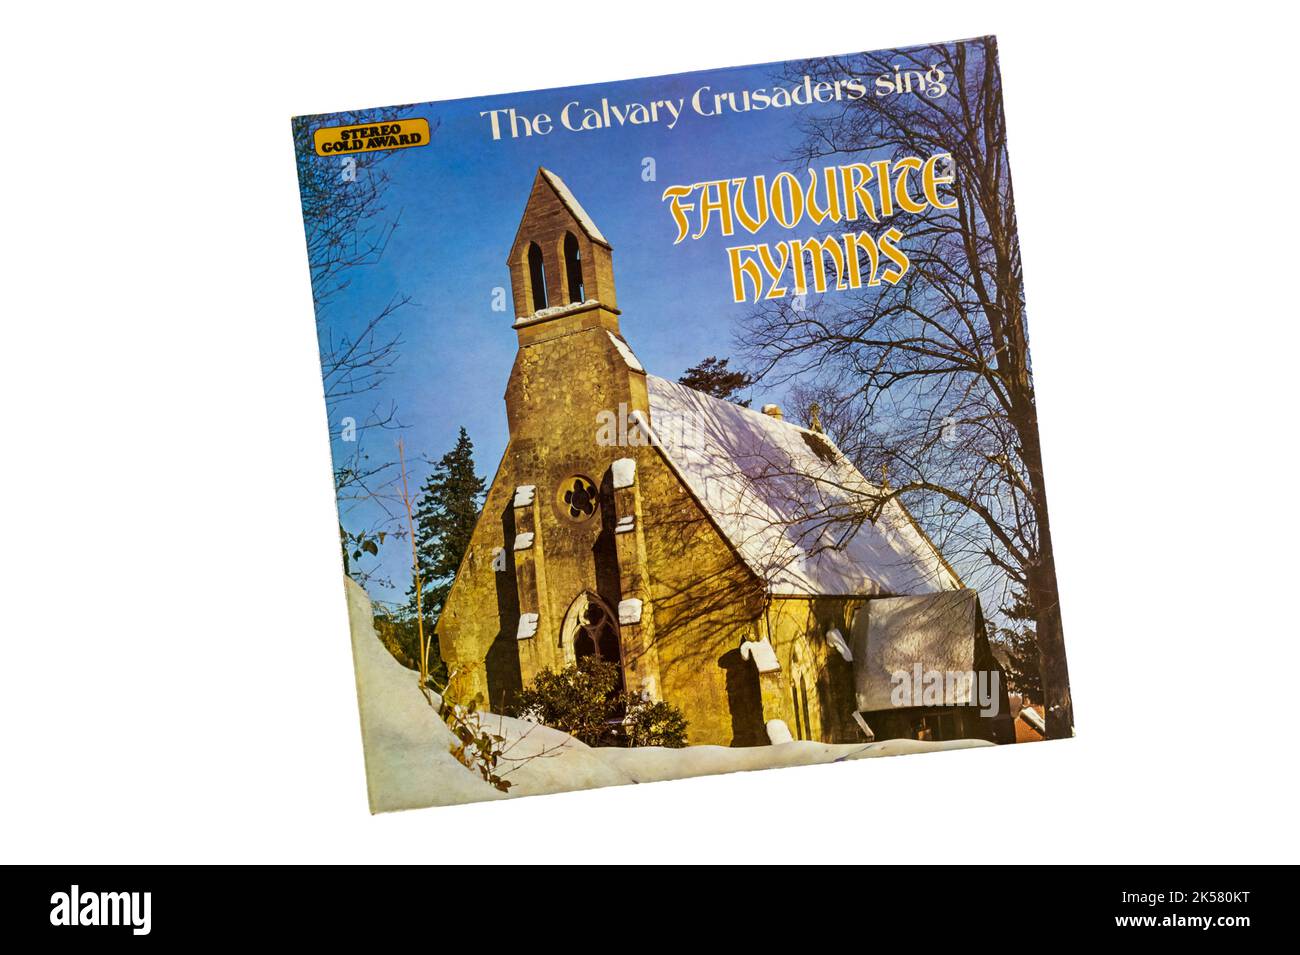 Aufnahme der Calvary Crusaders Sing Favourite Hymns. Veröffentlicht im Jahr 1978. Stockfoto